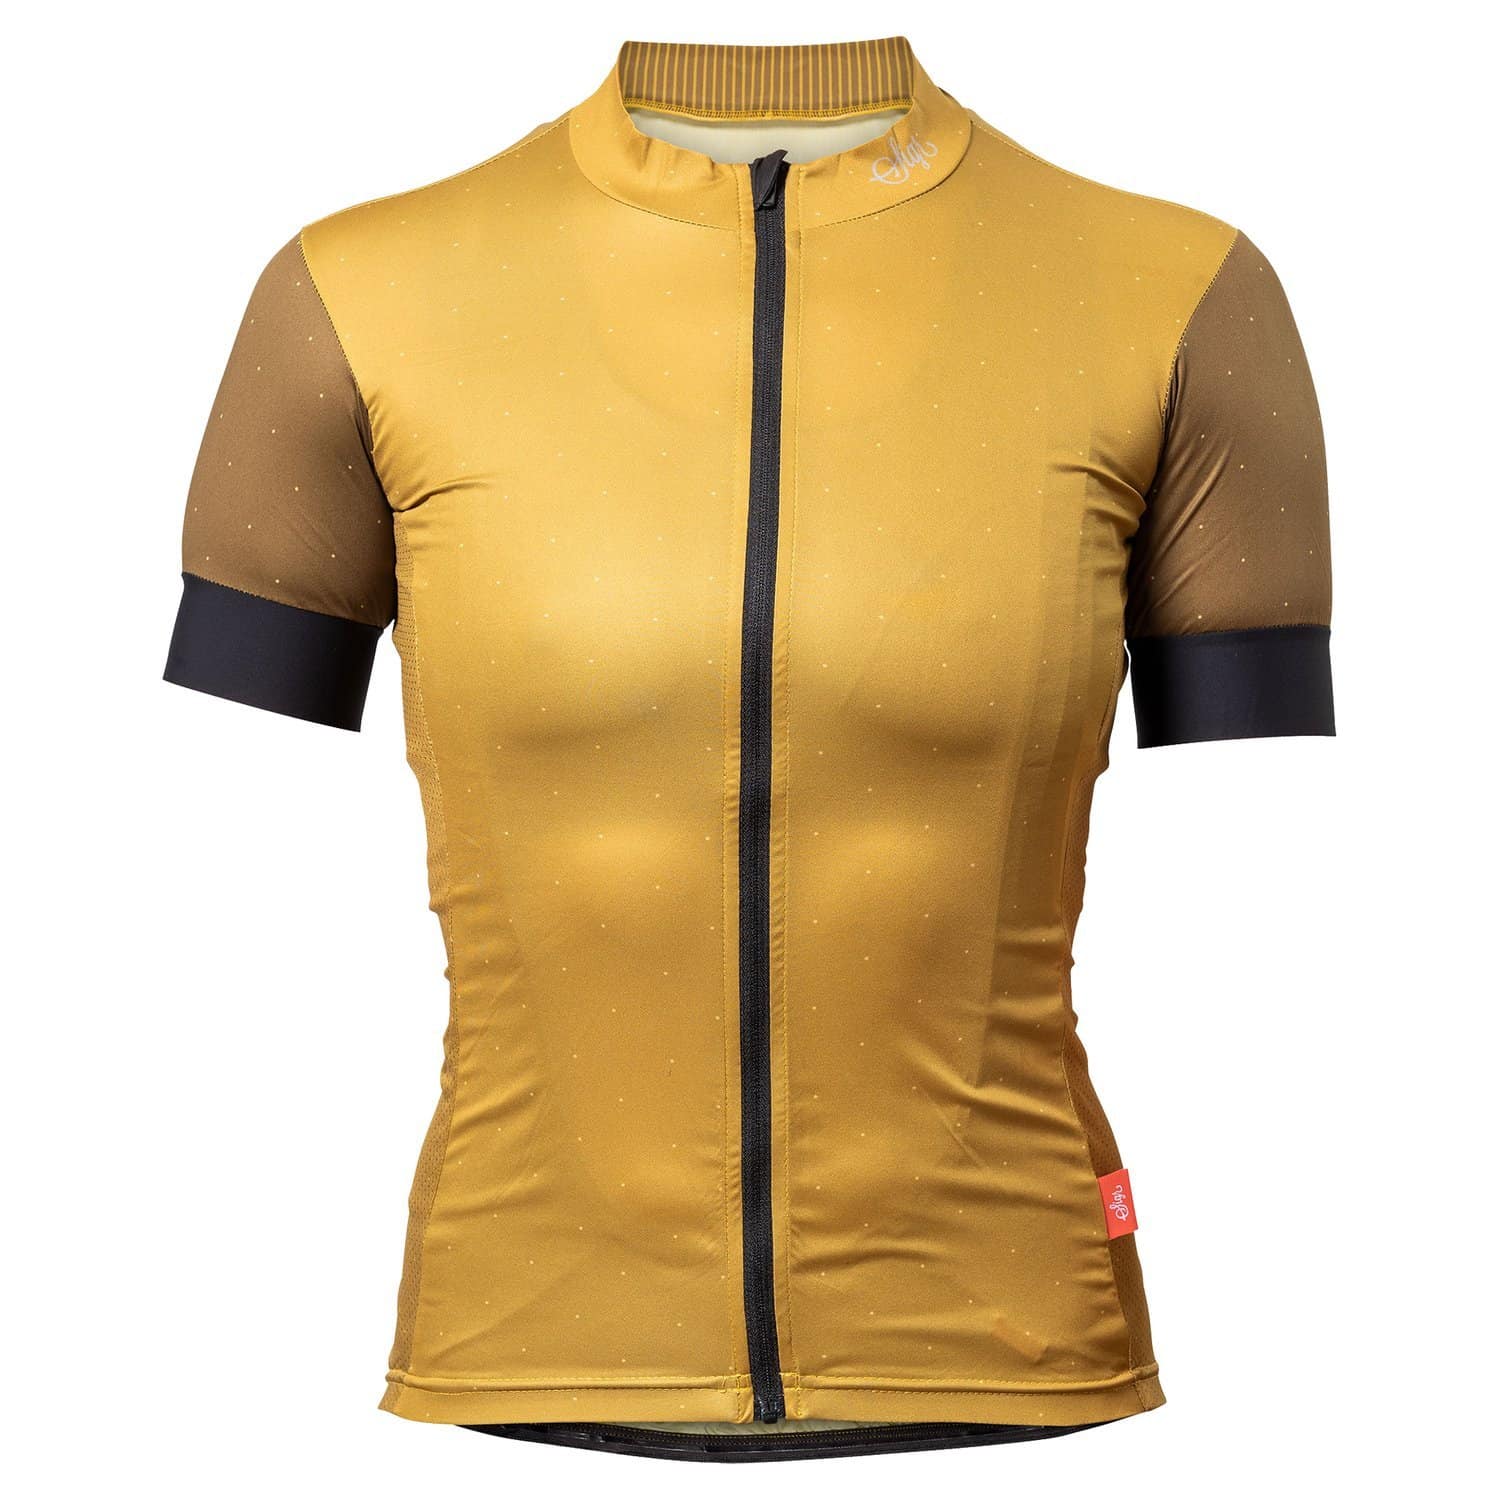 cycling jersey yellow